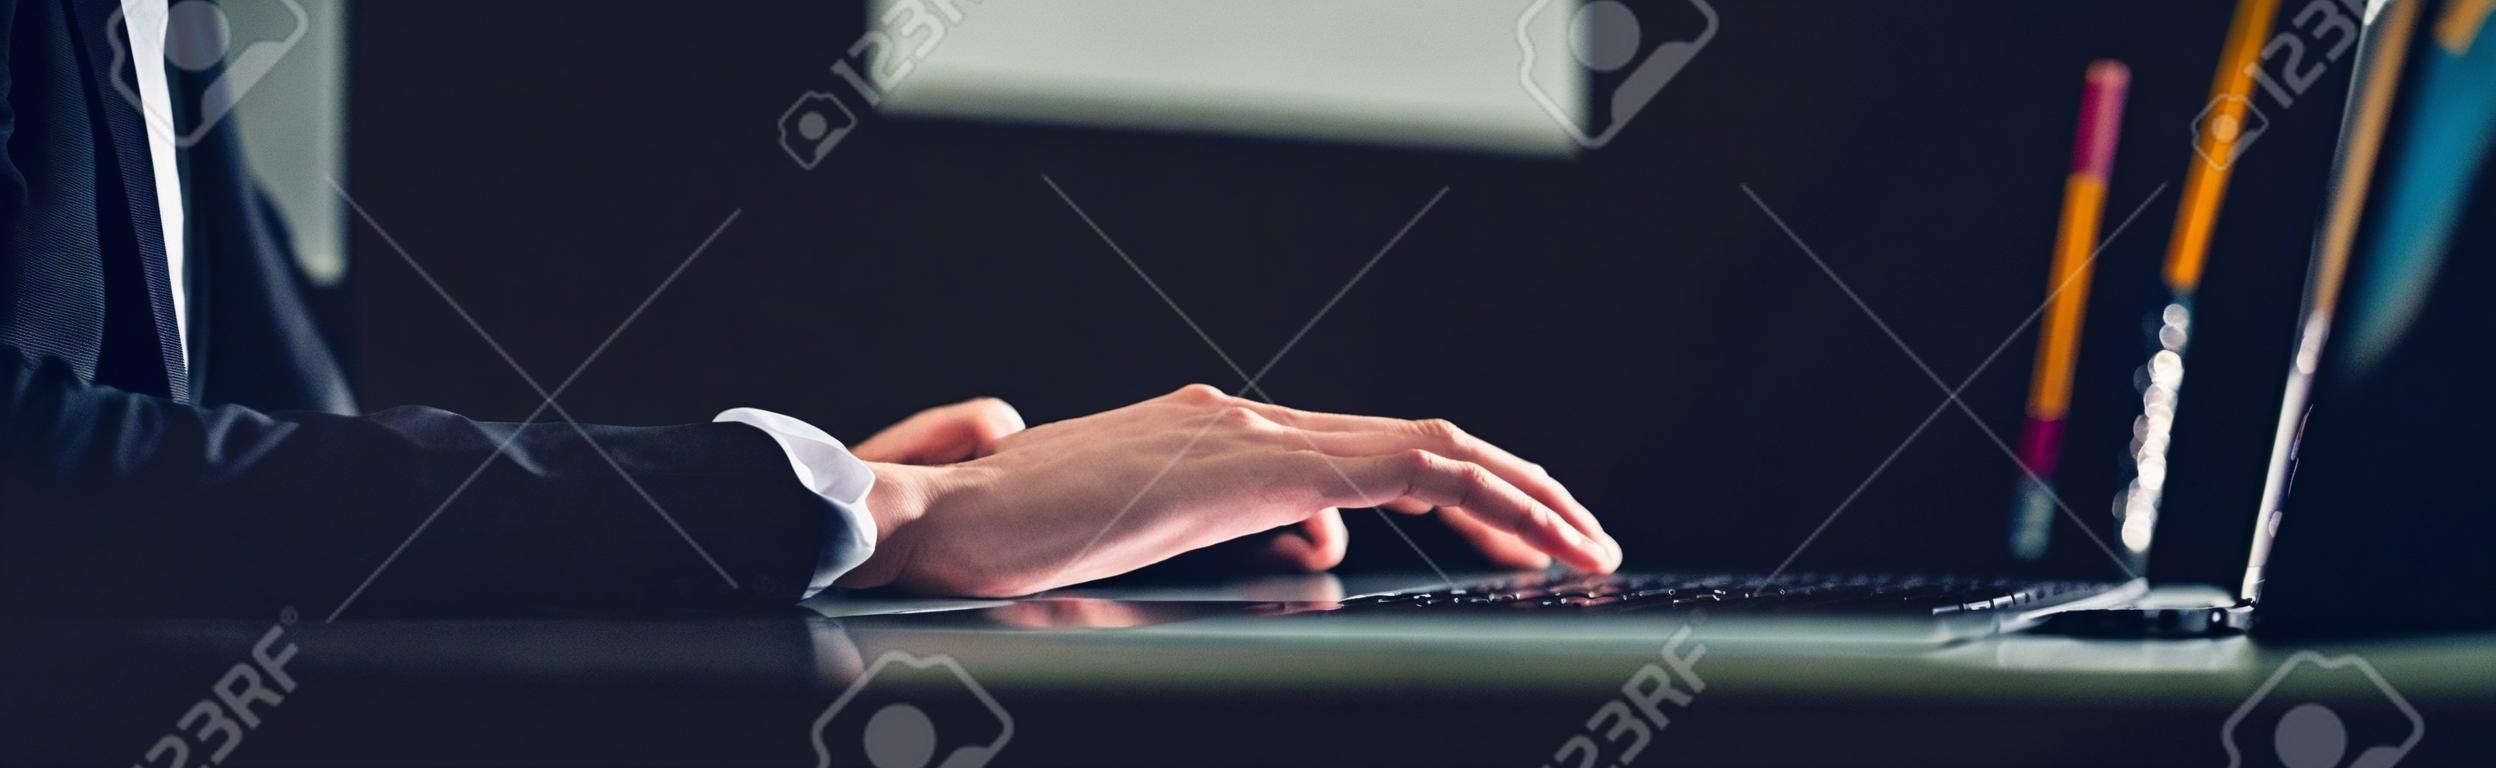 Человек, используя ноутбук, работающий над новой идеей проекта на своем столе в офисе поздно ночью - панорамный веб-баннер с копией пространства справа